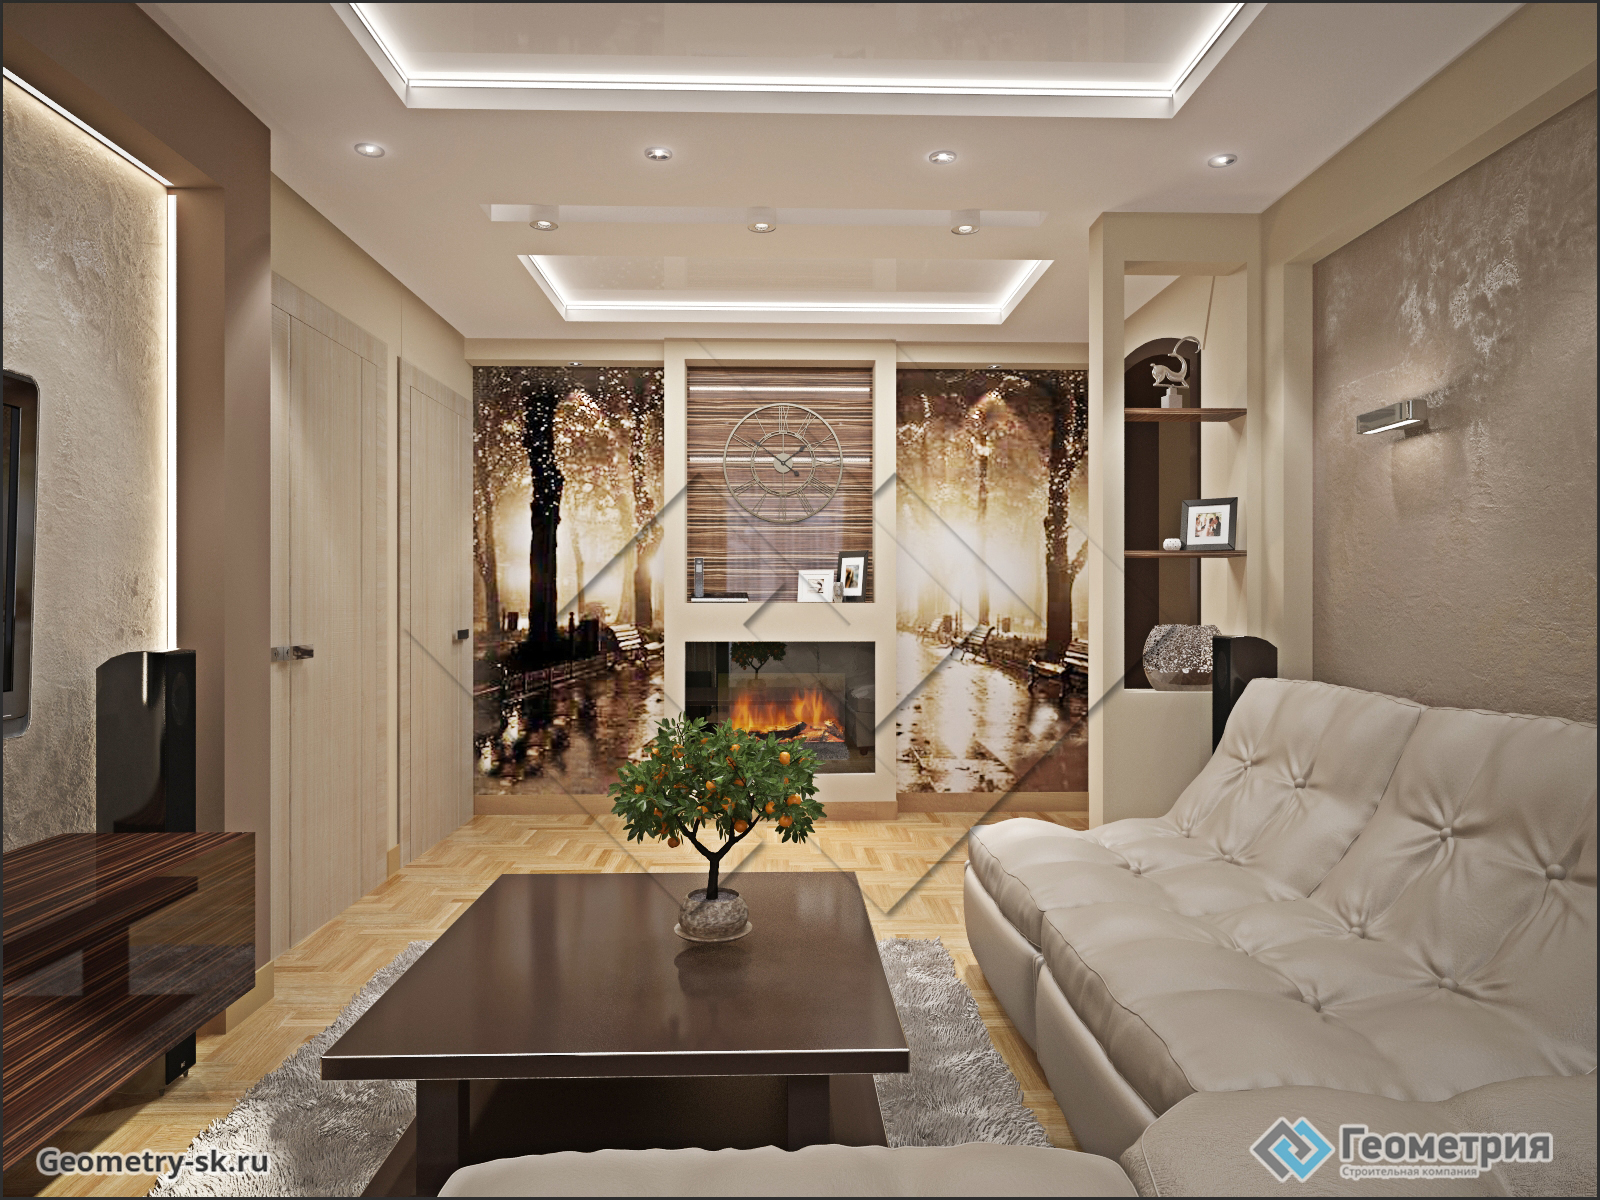 Гостиная с многоуровневыми потолками с подсветкой и электро-камином